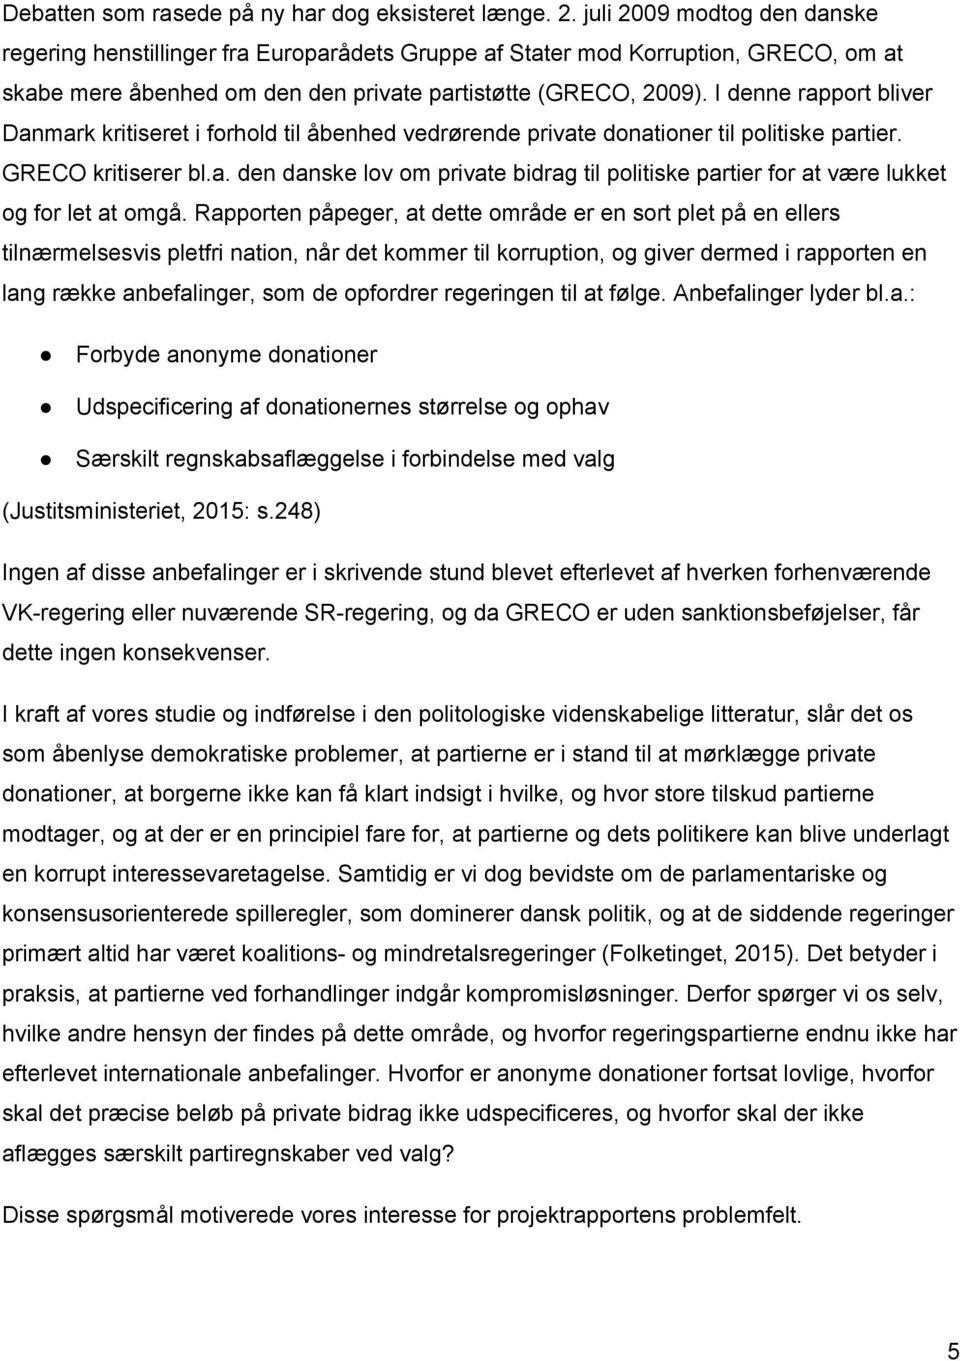 I denne rapport bliver Danmark kritiseret i forhold til åbenhed vedrørende private donationer til politiske partier. GRECO kritiserer bl.a. den danske lov om private bidrag til politiske partier for at være lukket og for let at omgå.